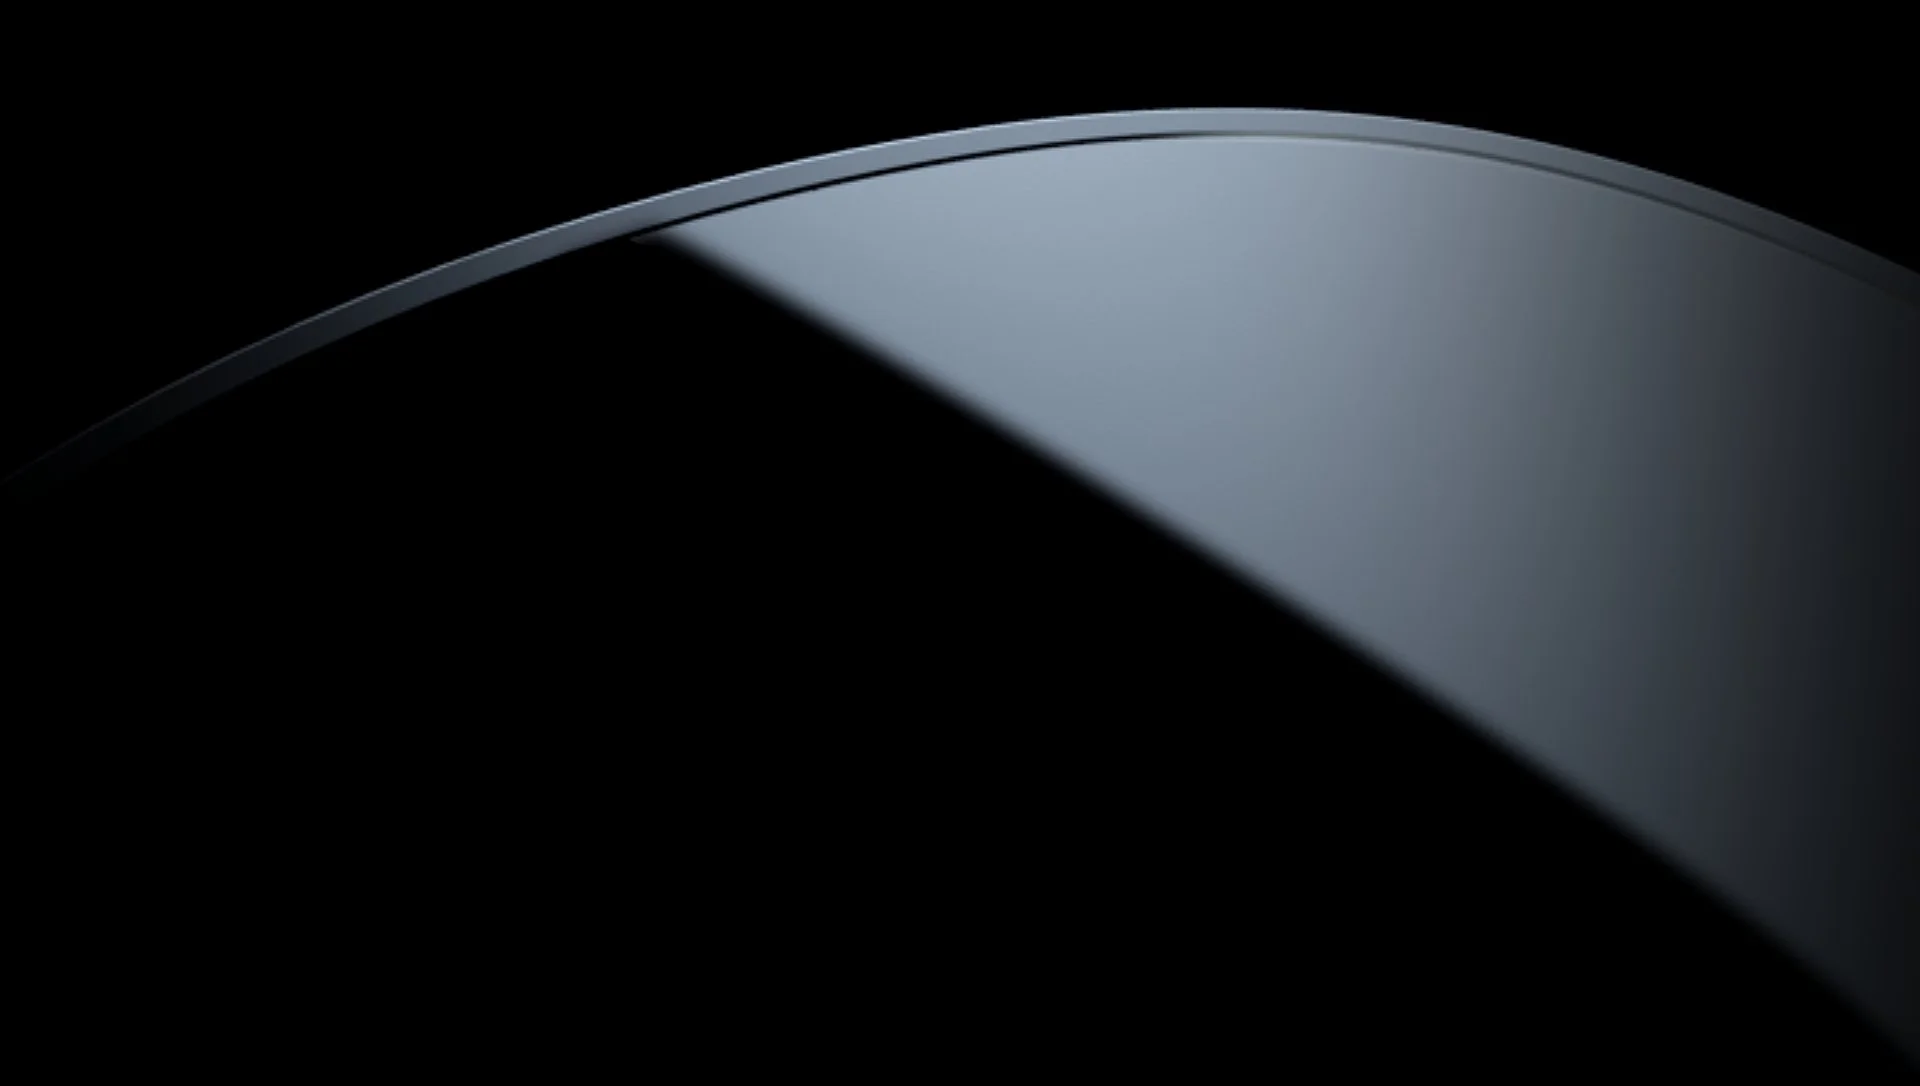 HTC kündigt neue, kleine VR-Brille an – Vive Flow 2?